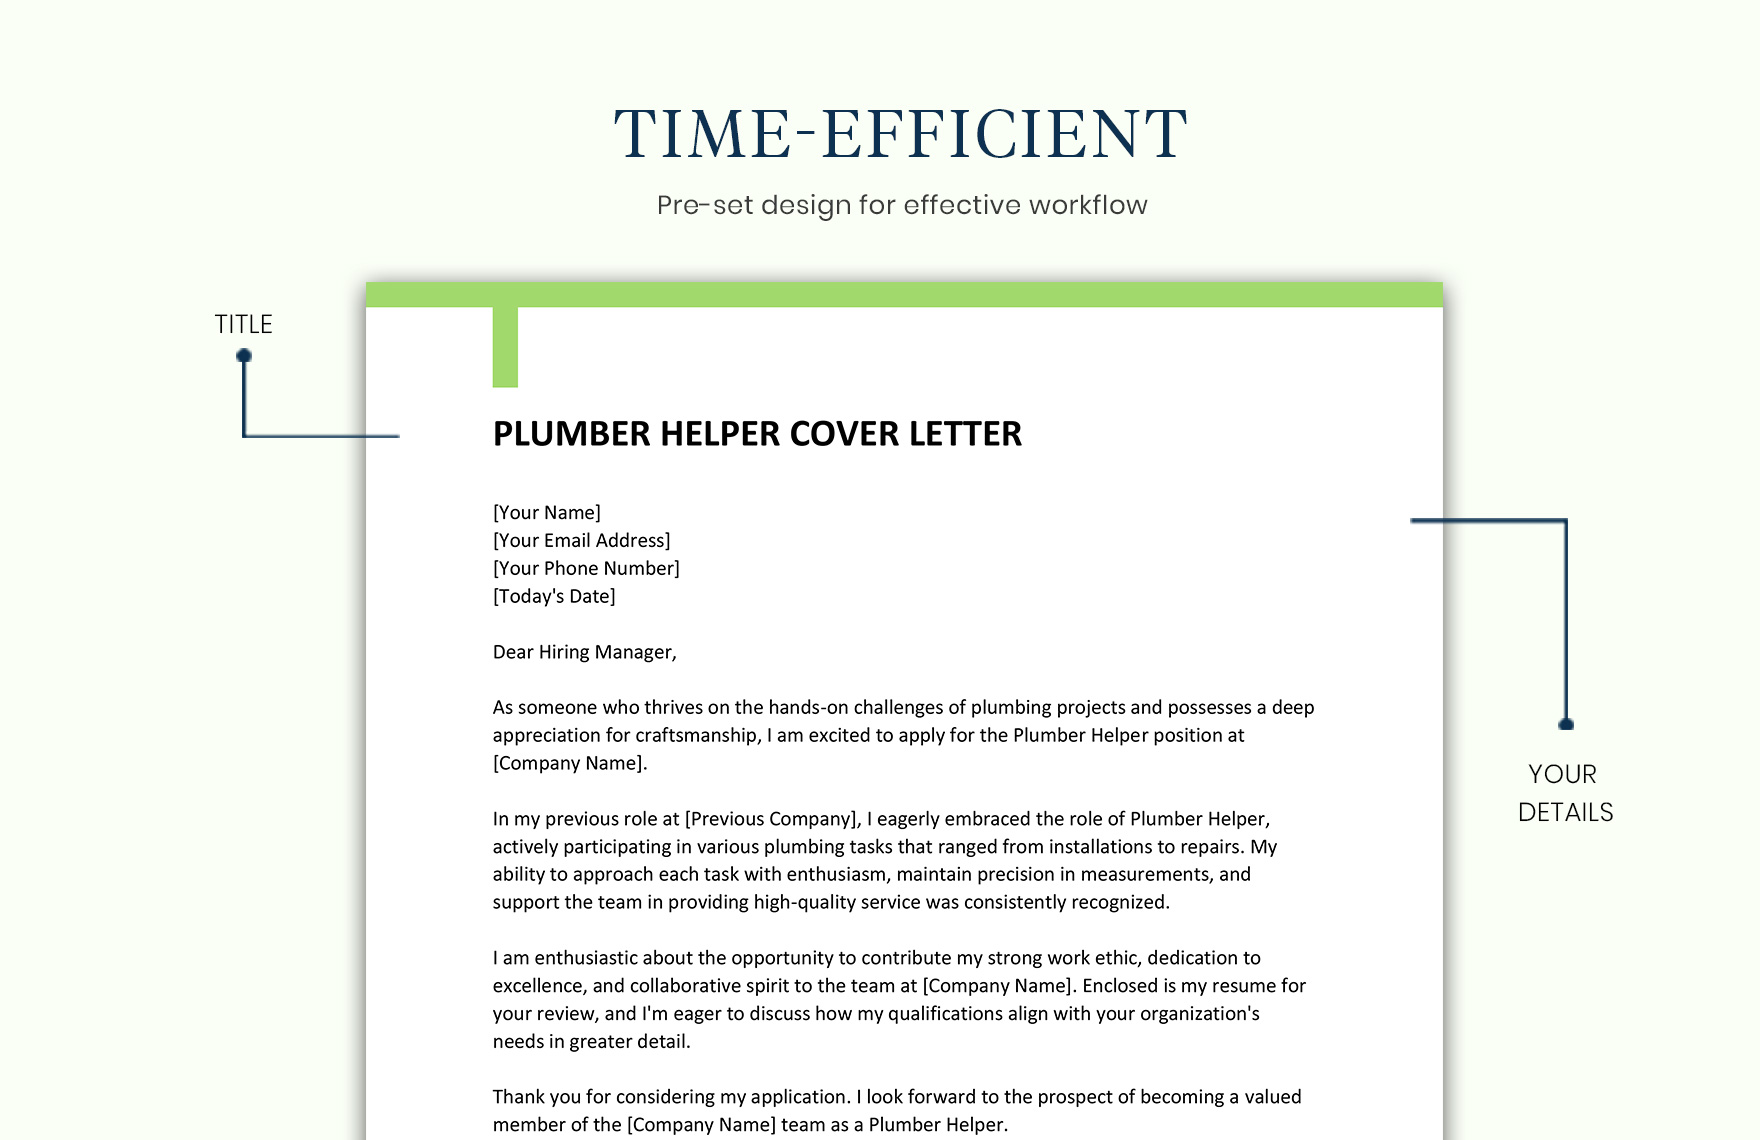 Plumber Helper Cover Letter